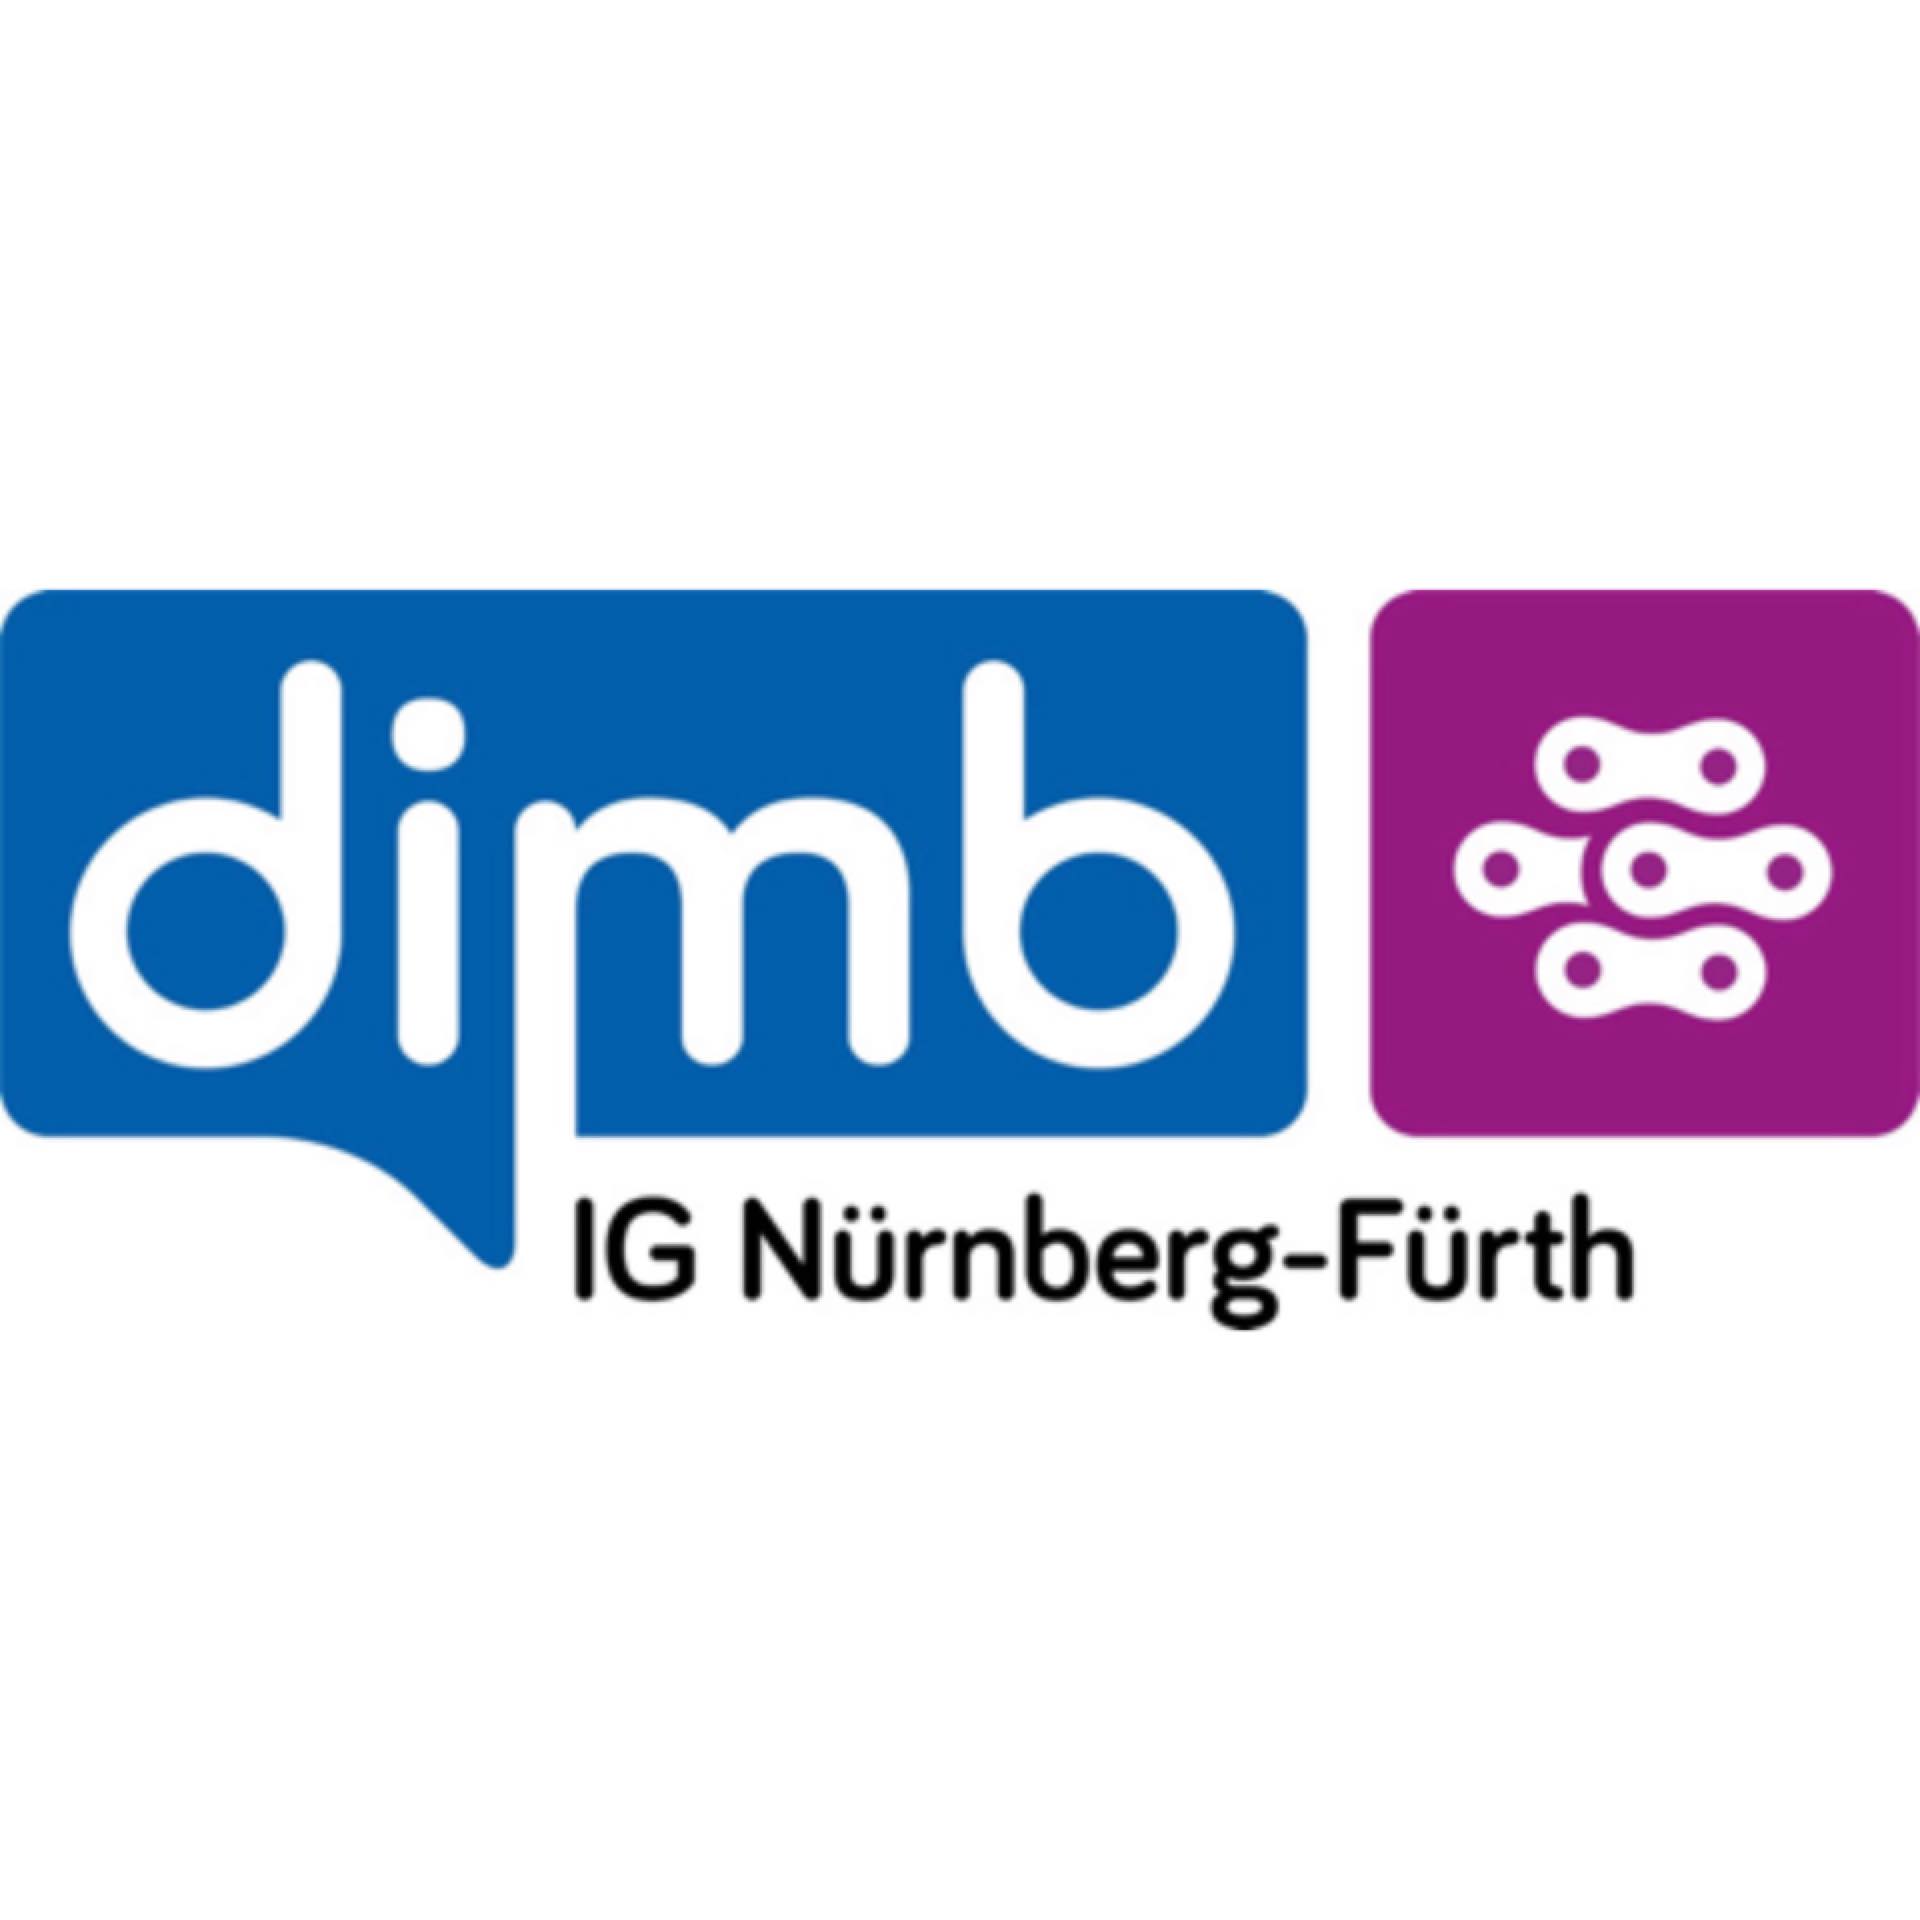 (c) Dimb-ig-nuernberg-fuerth.de